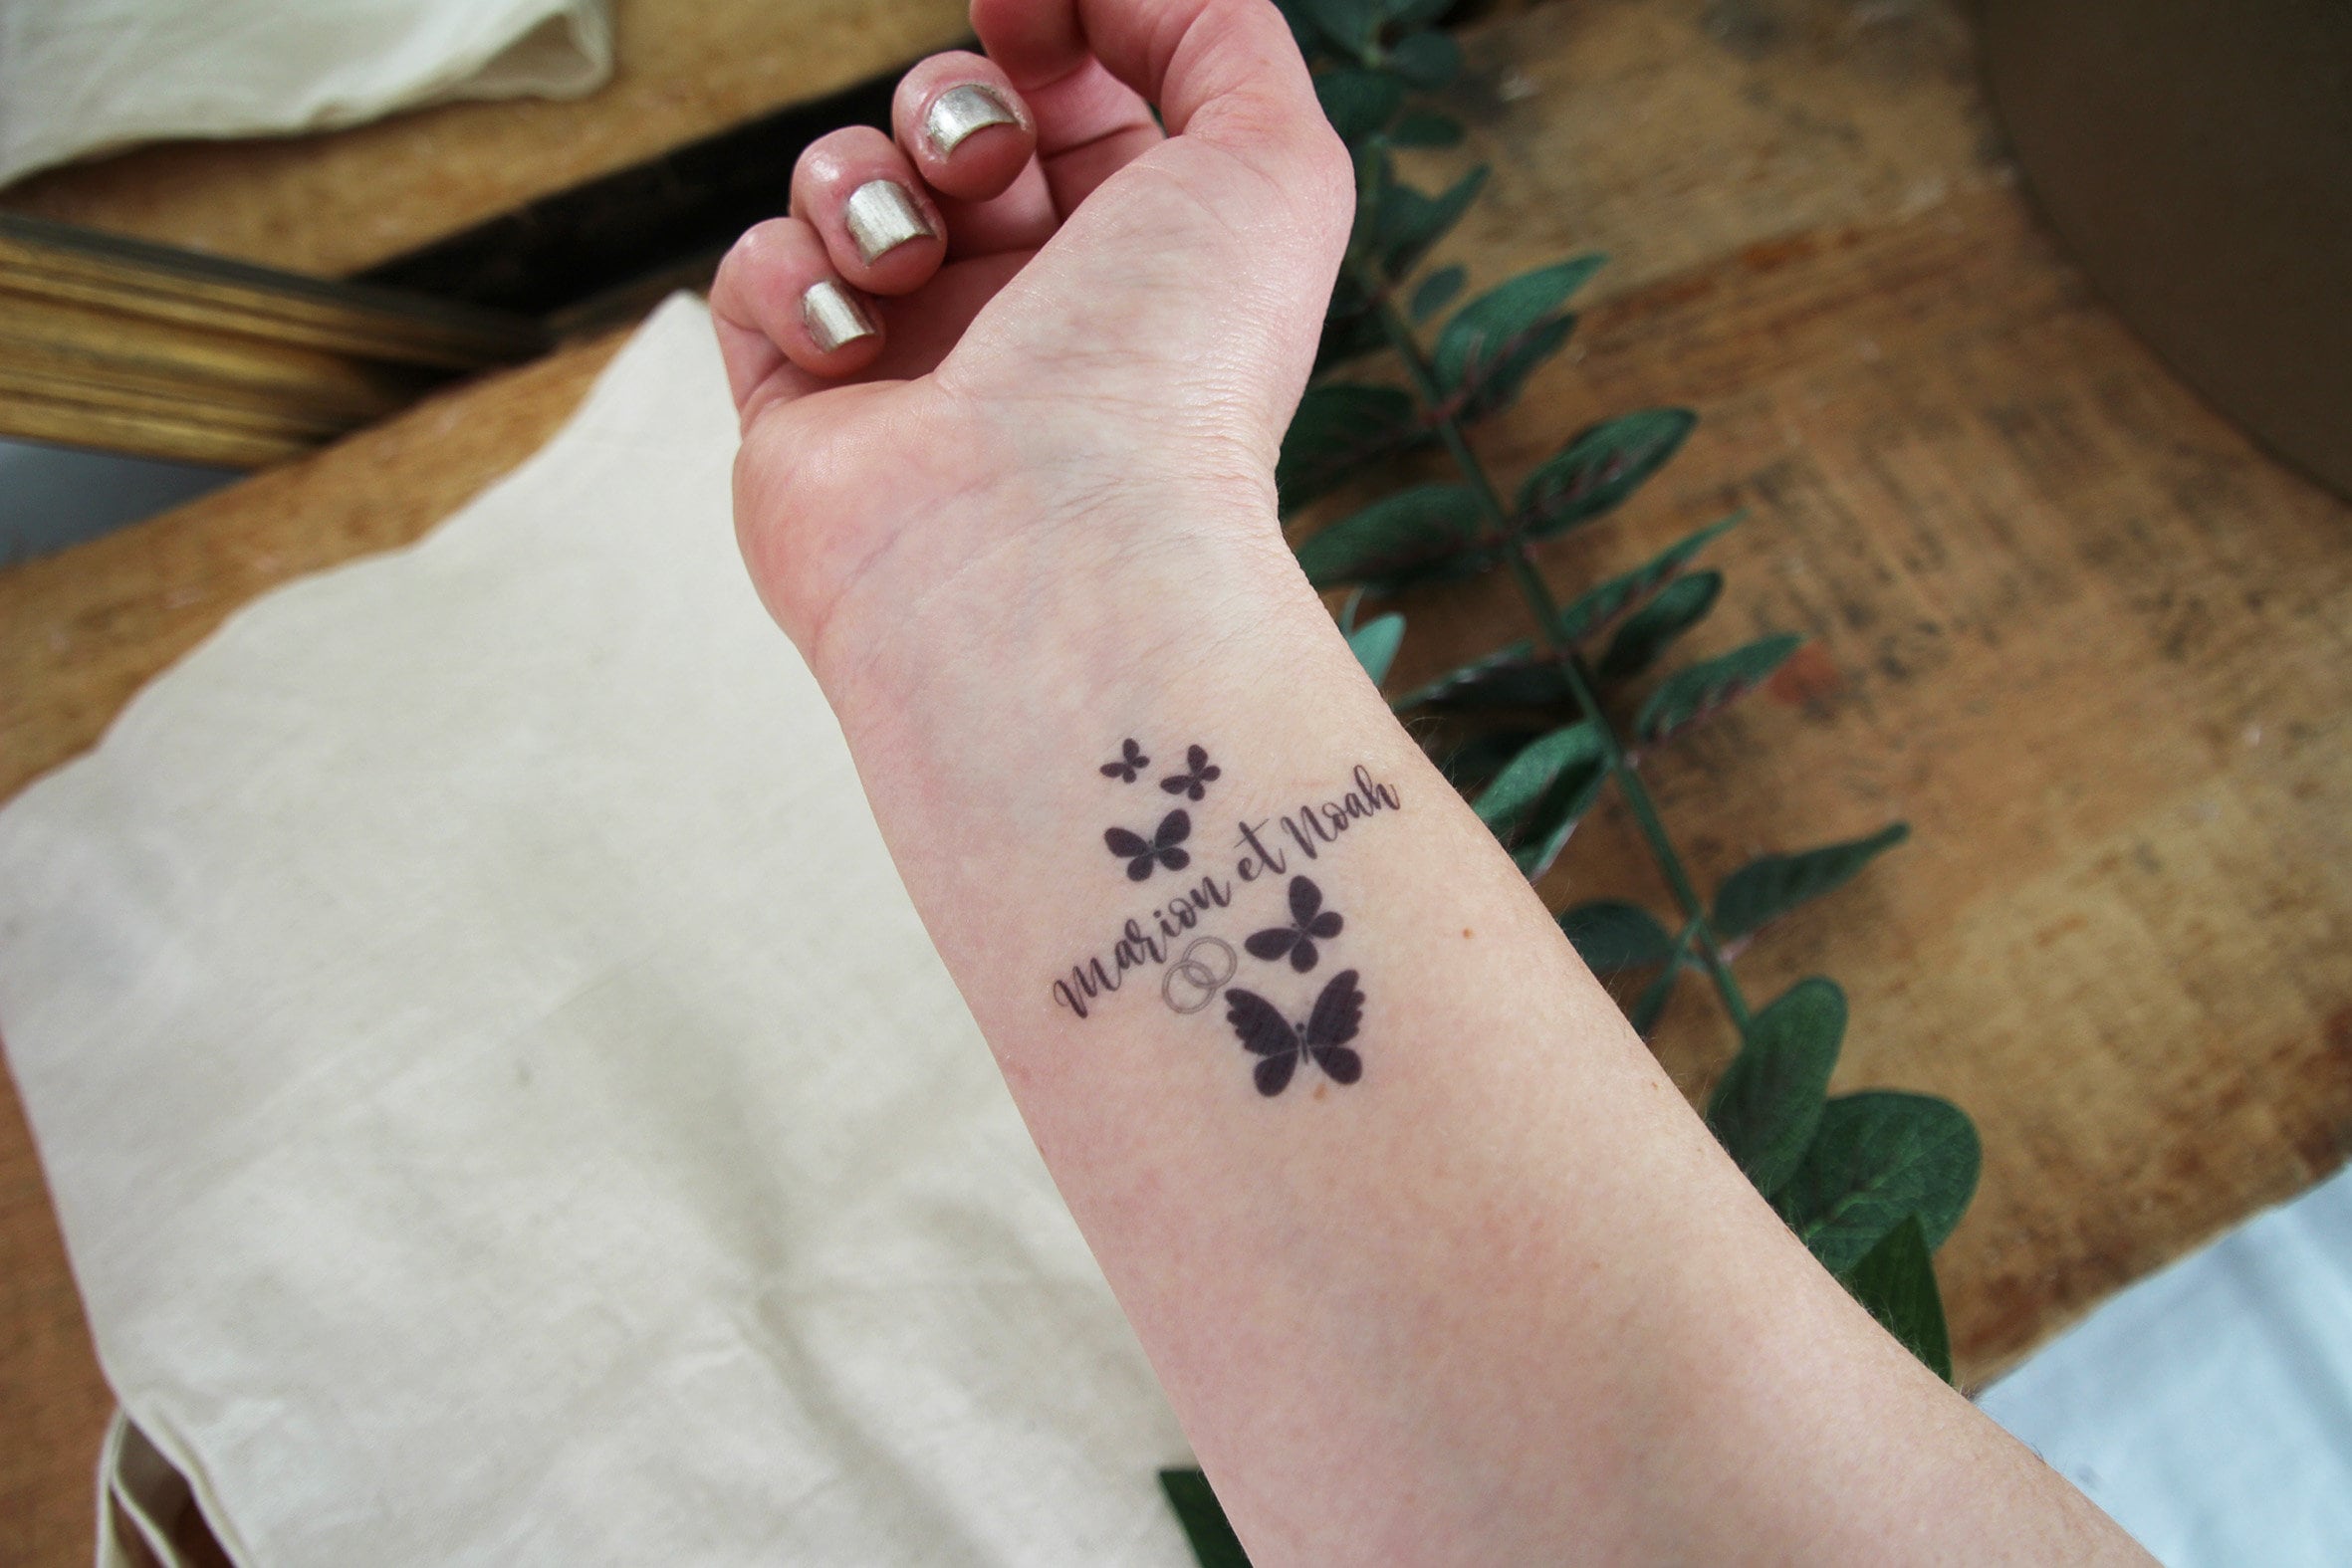 Kit de tatouage temporaire de paillettes pour les enfants Faux tatouage  pour les filles, tatouages imperméables DIY avec autocollant de 90  feuilles24 boîte à paillettes et 3 pinceaux -  Canada